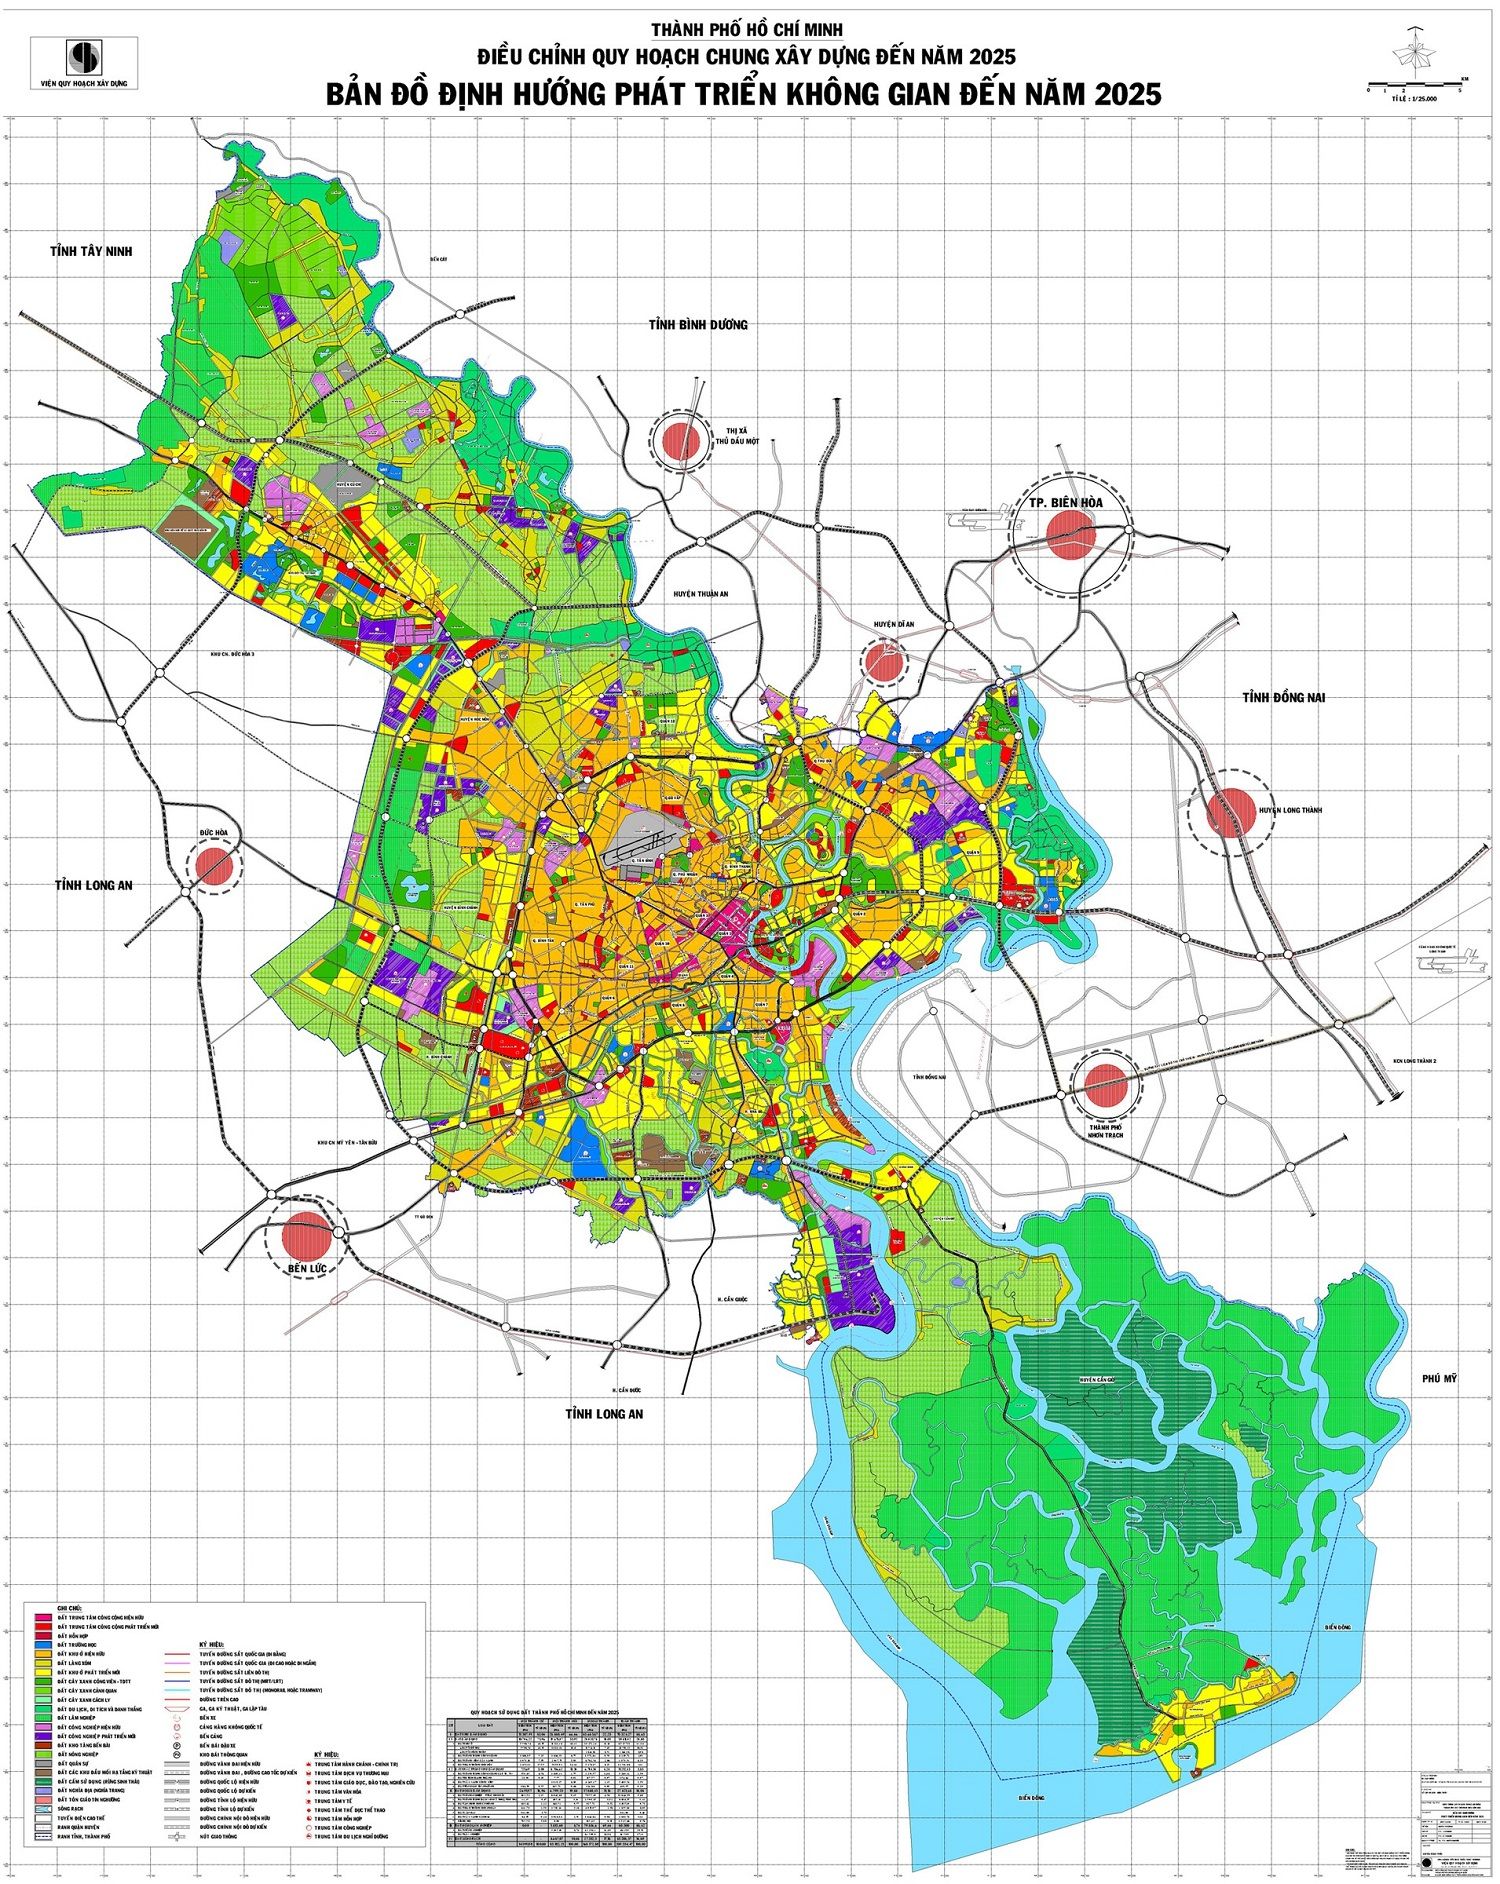 Bản đồ quy hoạch các quận, huyện TP.HCM mới nhất 2020 là nguồn thông tin không thể thiếu cho người dân sinh sống và làm việc tại Thành phố. Với bản đồ quy hoạch TP.HCM 2024, người dân sẽ thấy được sự tiếp tục cải thiện và phát triển hơn nữa về hạ tầng, quy hoạch đô thị và chất lượng cuộc sống.